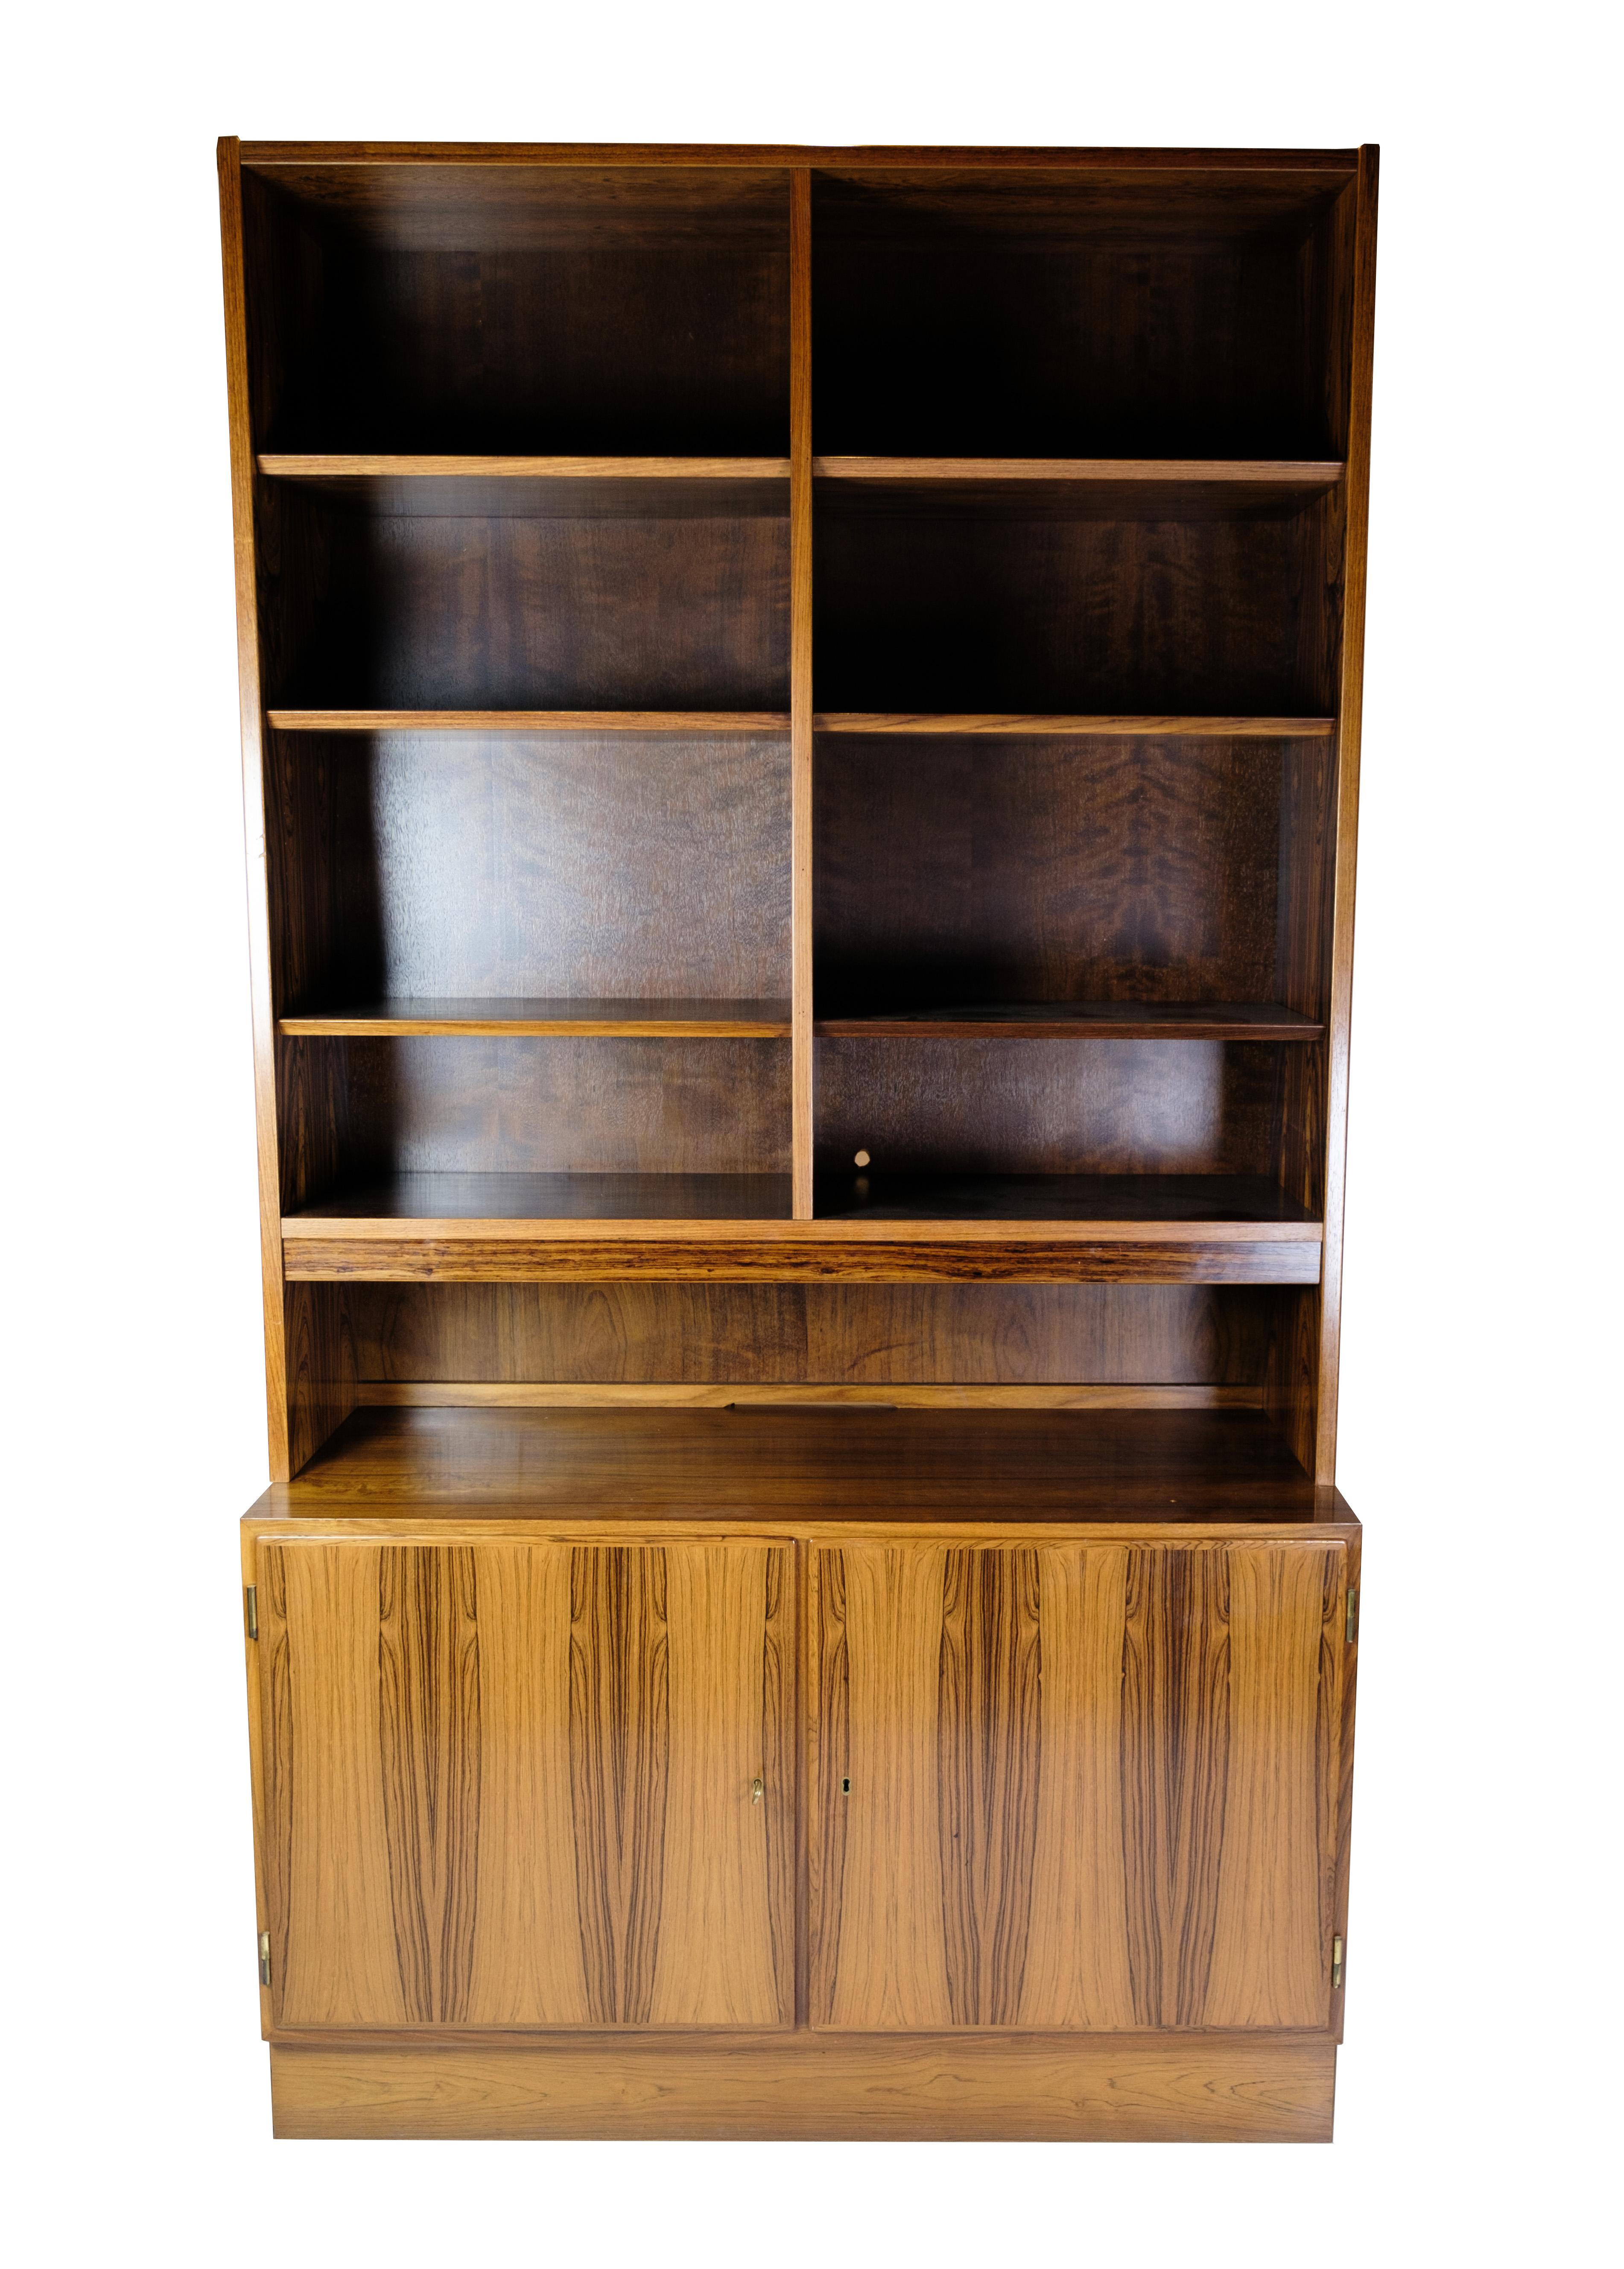 Dieses Bücherregal aus Palisanderholz ist ein großartiges Beispiel für dänisches Möbeldesign. Dieses Bücherregal wurde von Hundevad, einem renommierten Hersteller mit einer langen Geschichte von Qualität und Handwerkskunst, entworfen und ist ein